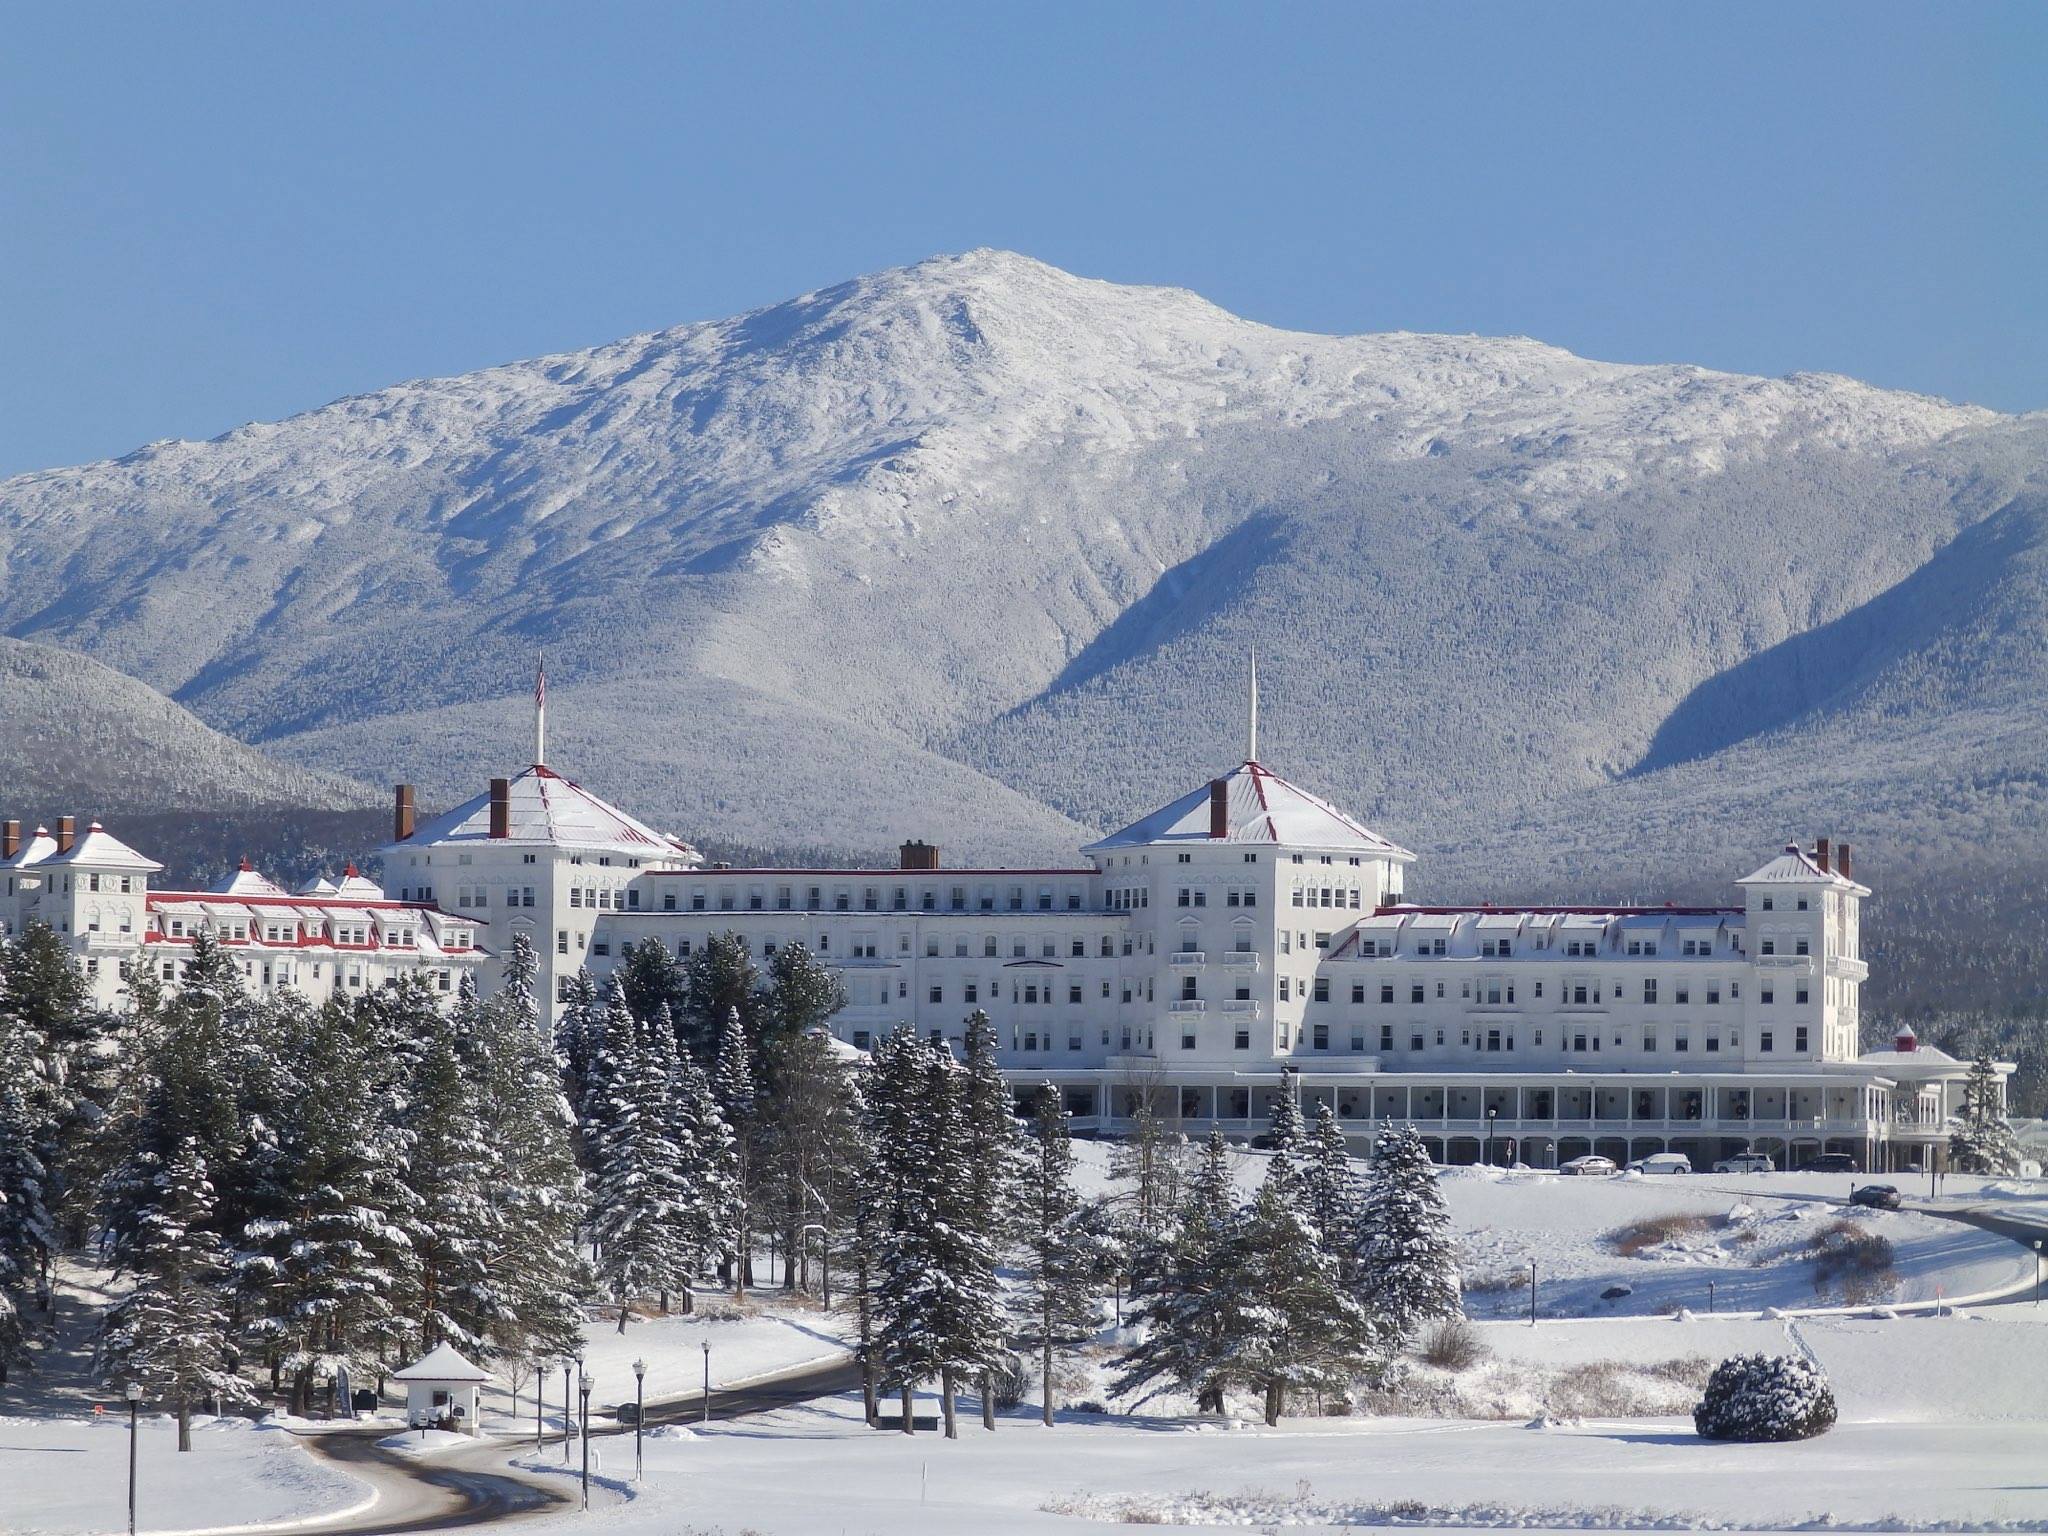 Image of Mount Washington Hotel New Hampshire